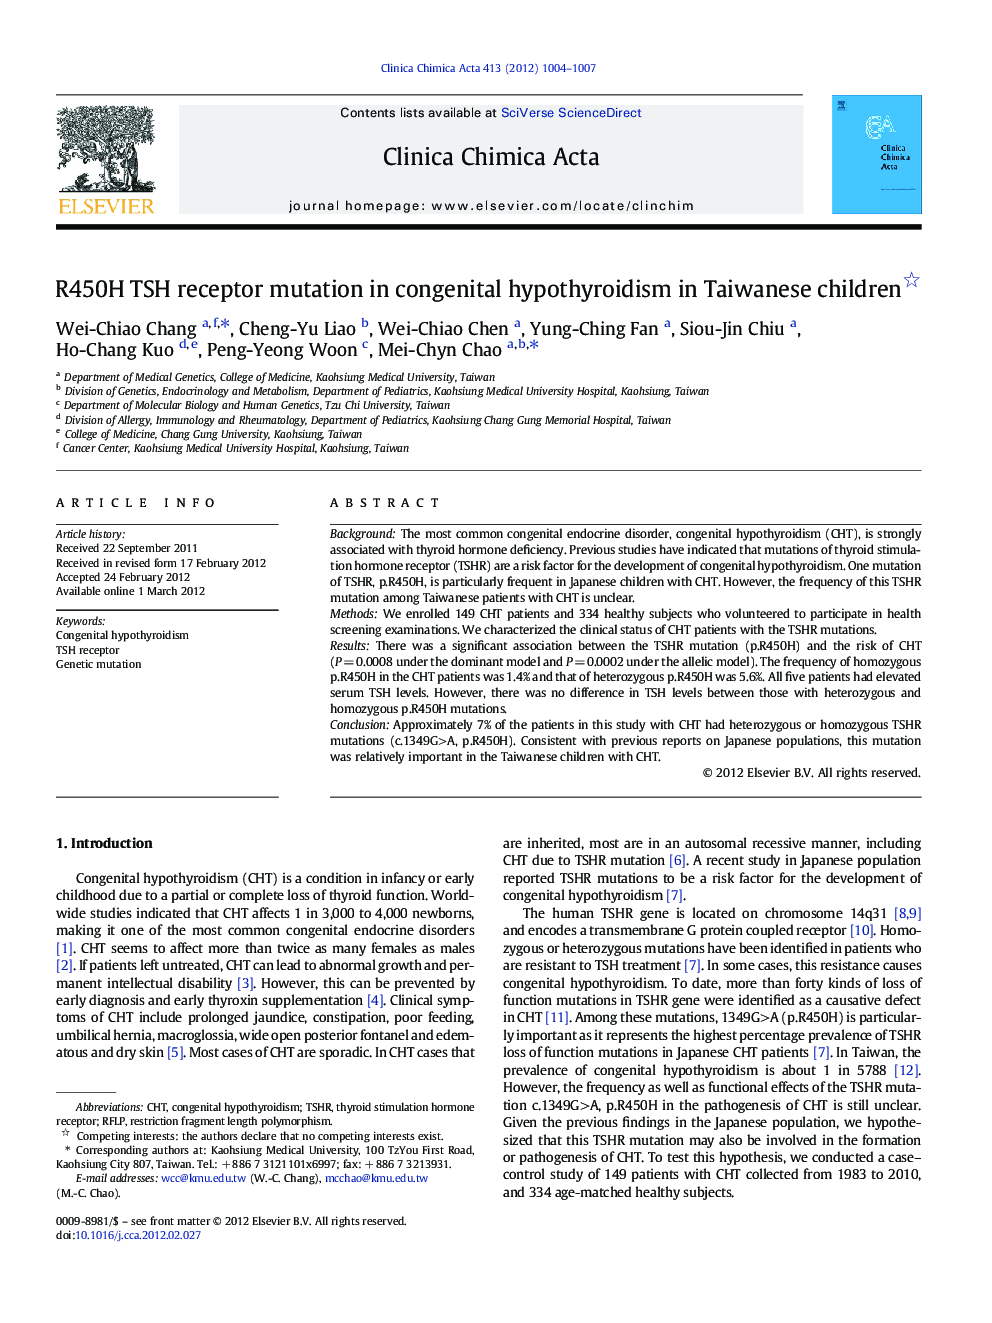 R450H TSH receptor mutation in congenital hypothyroidism in Taiwanese children 